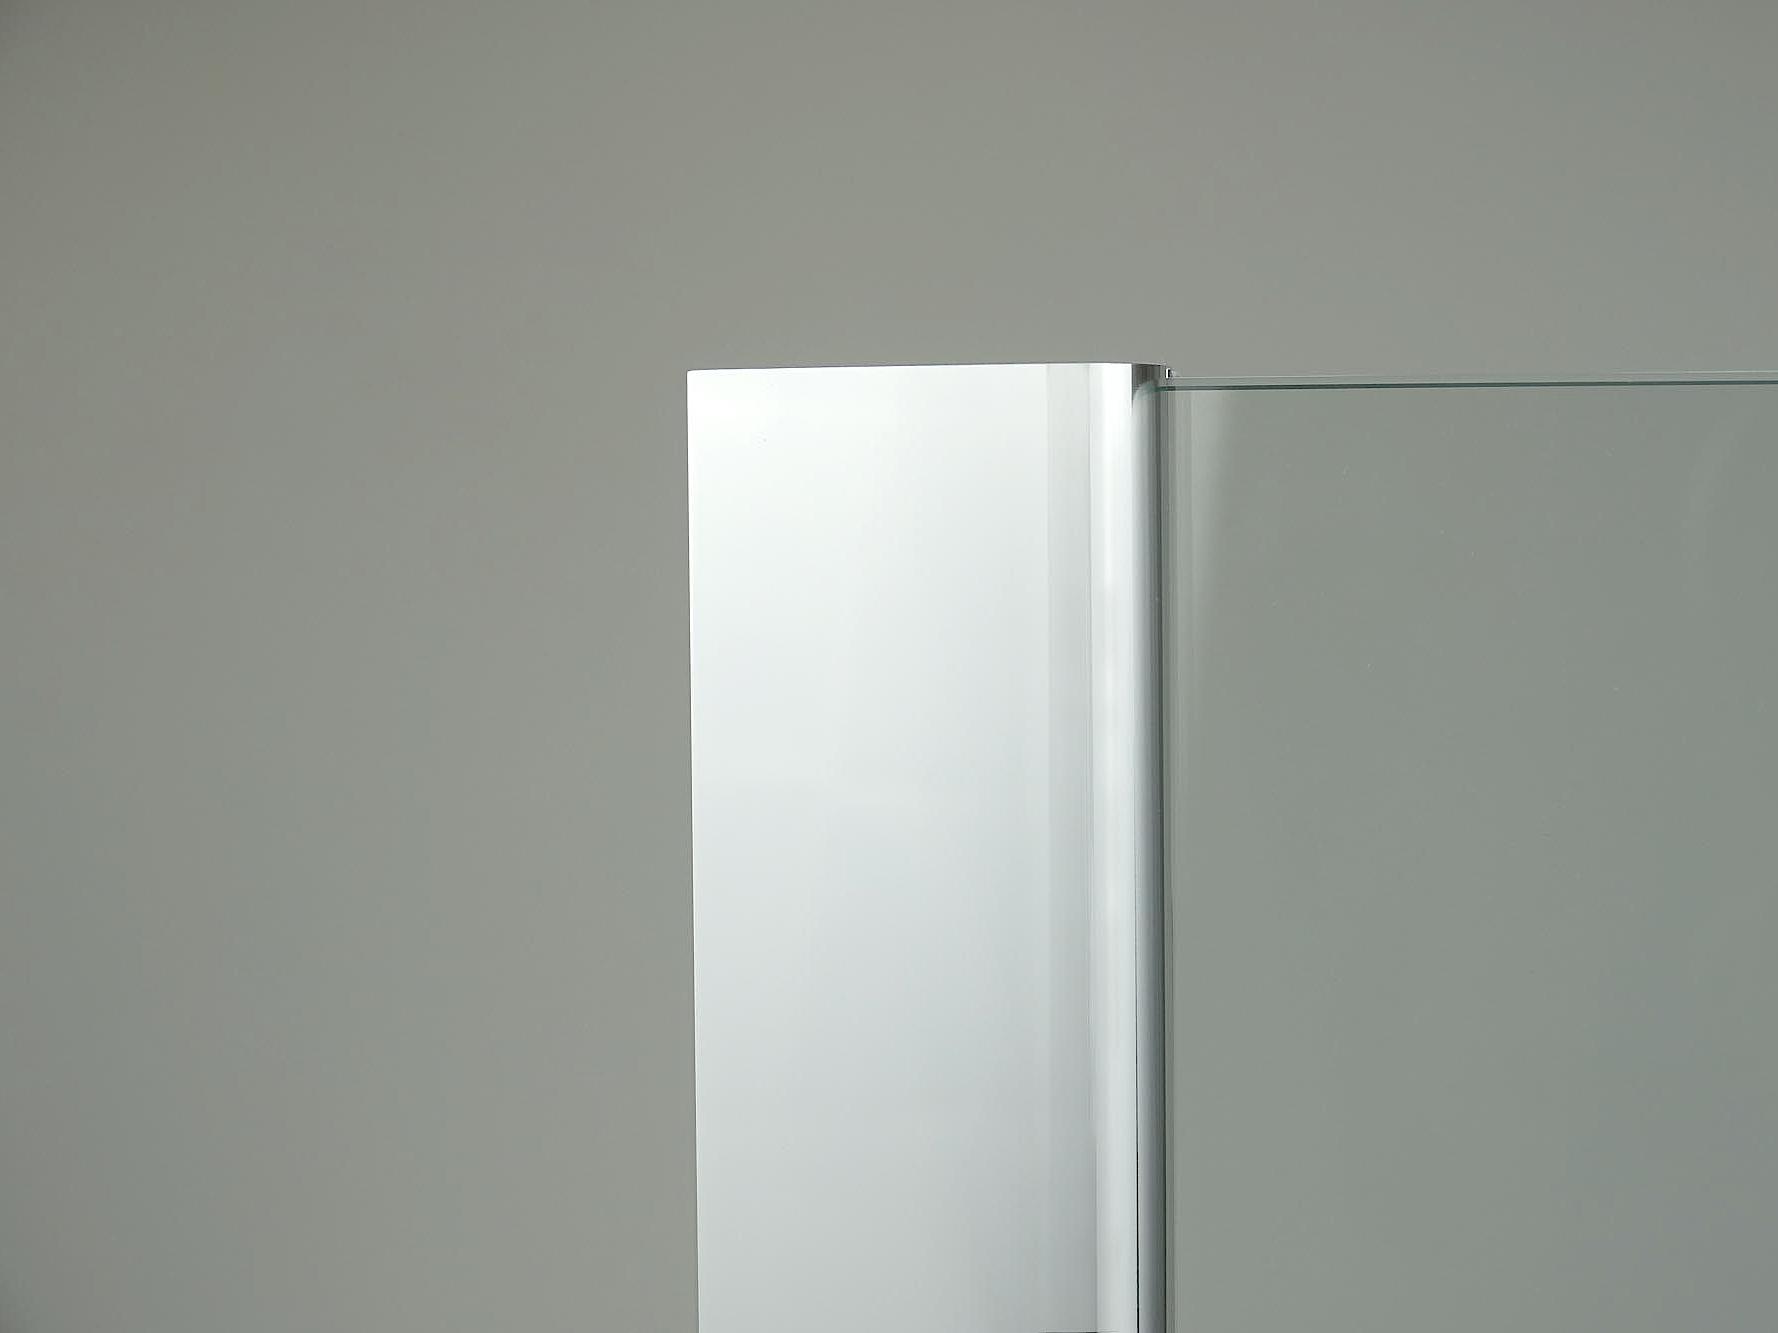 Kabina prysznicowa Kermi, powierzchnia profilu ściennego w kolorze srebro wysoki połysk